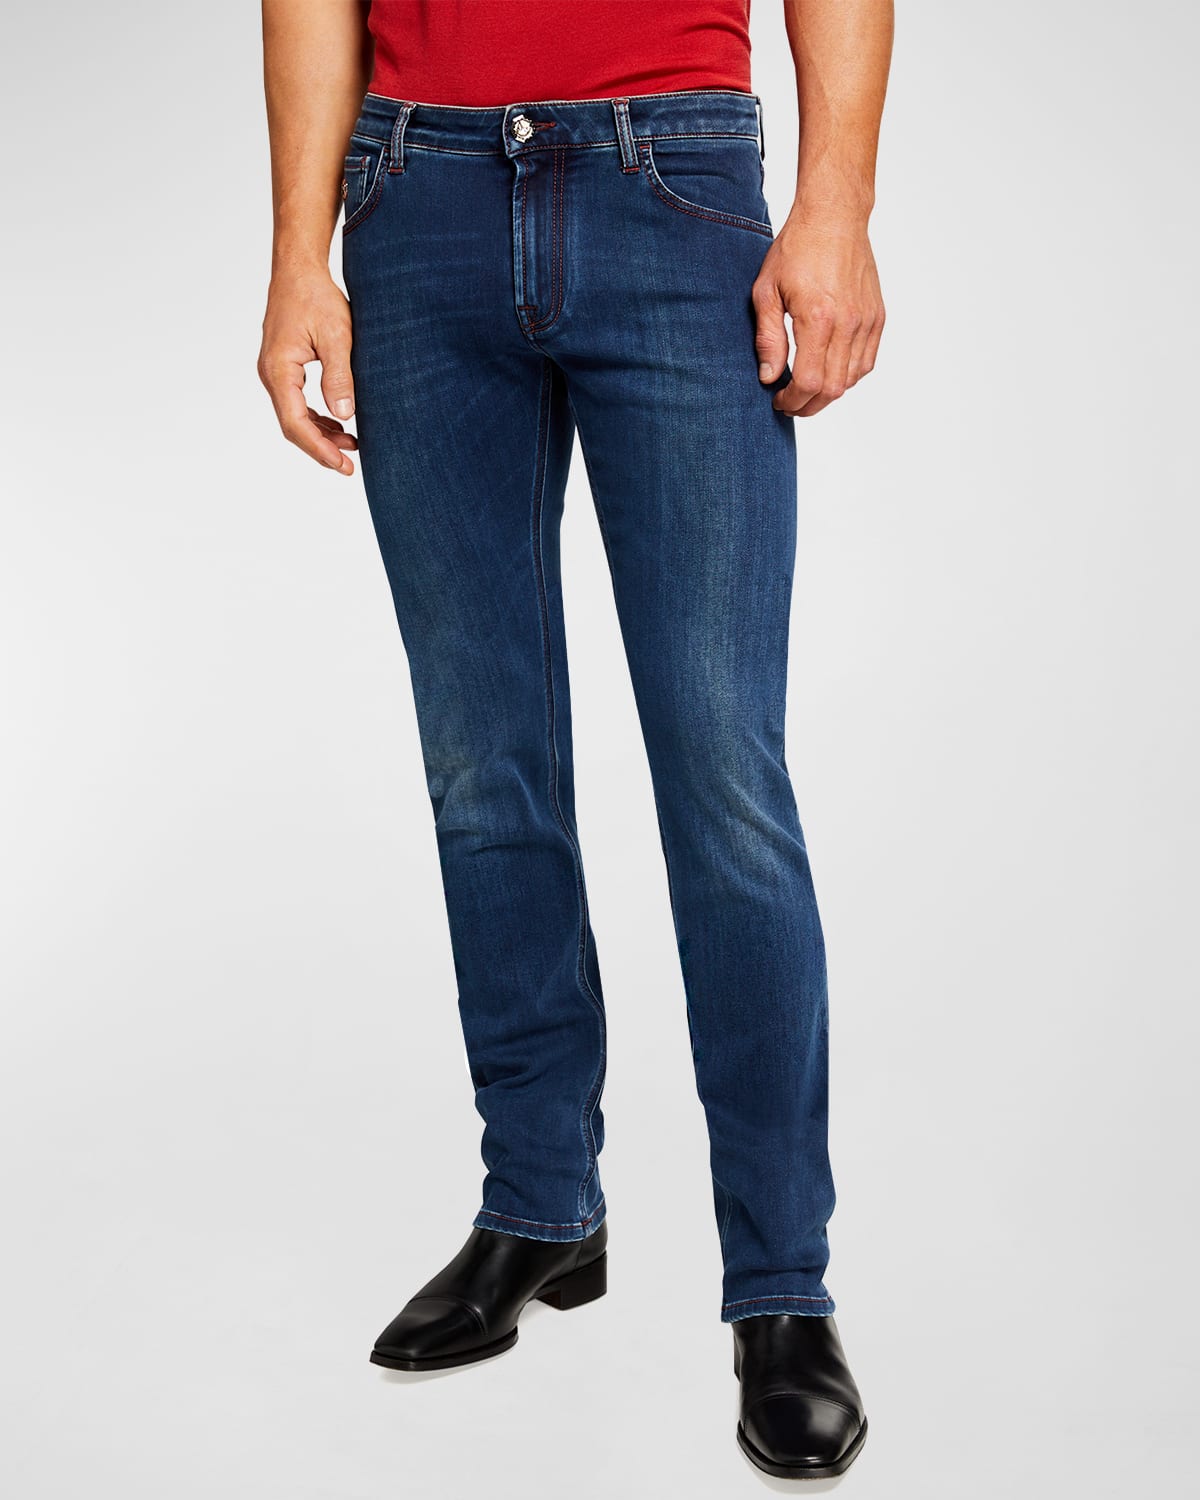 Men's Dark-Wash Straight-Leg Denim Jeans